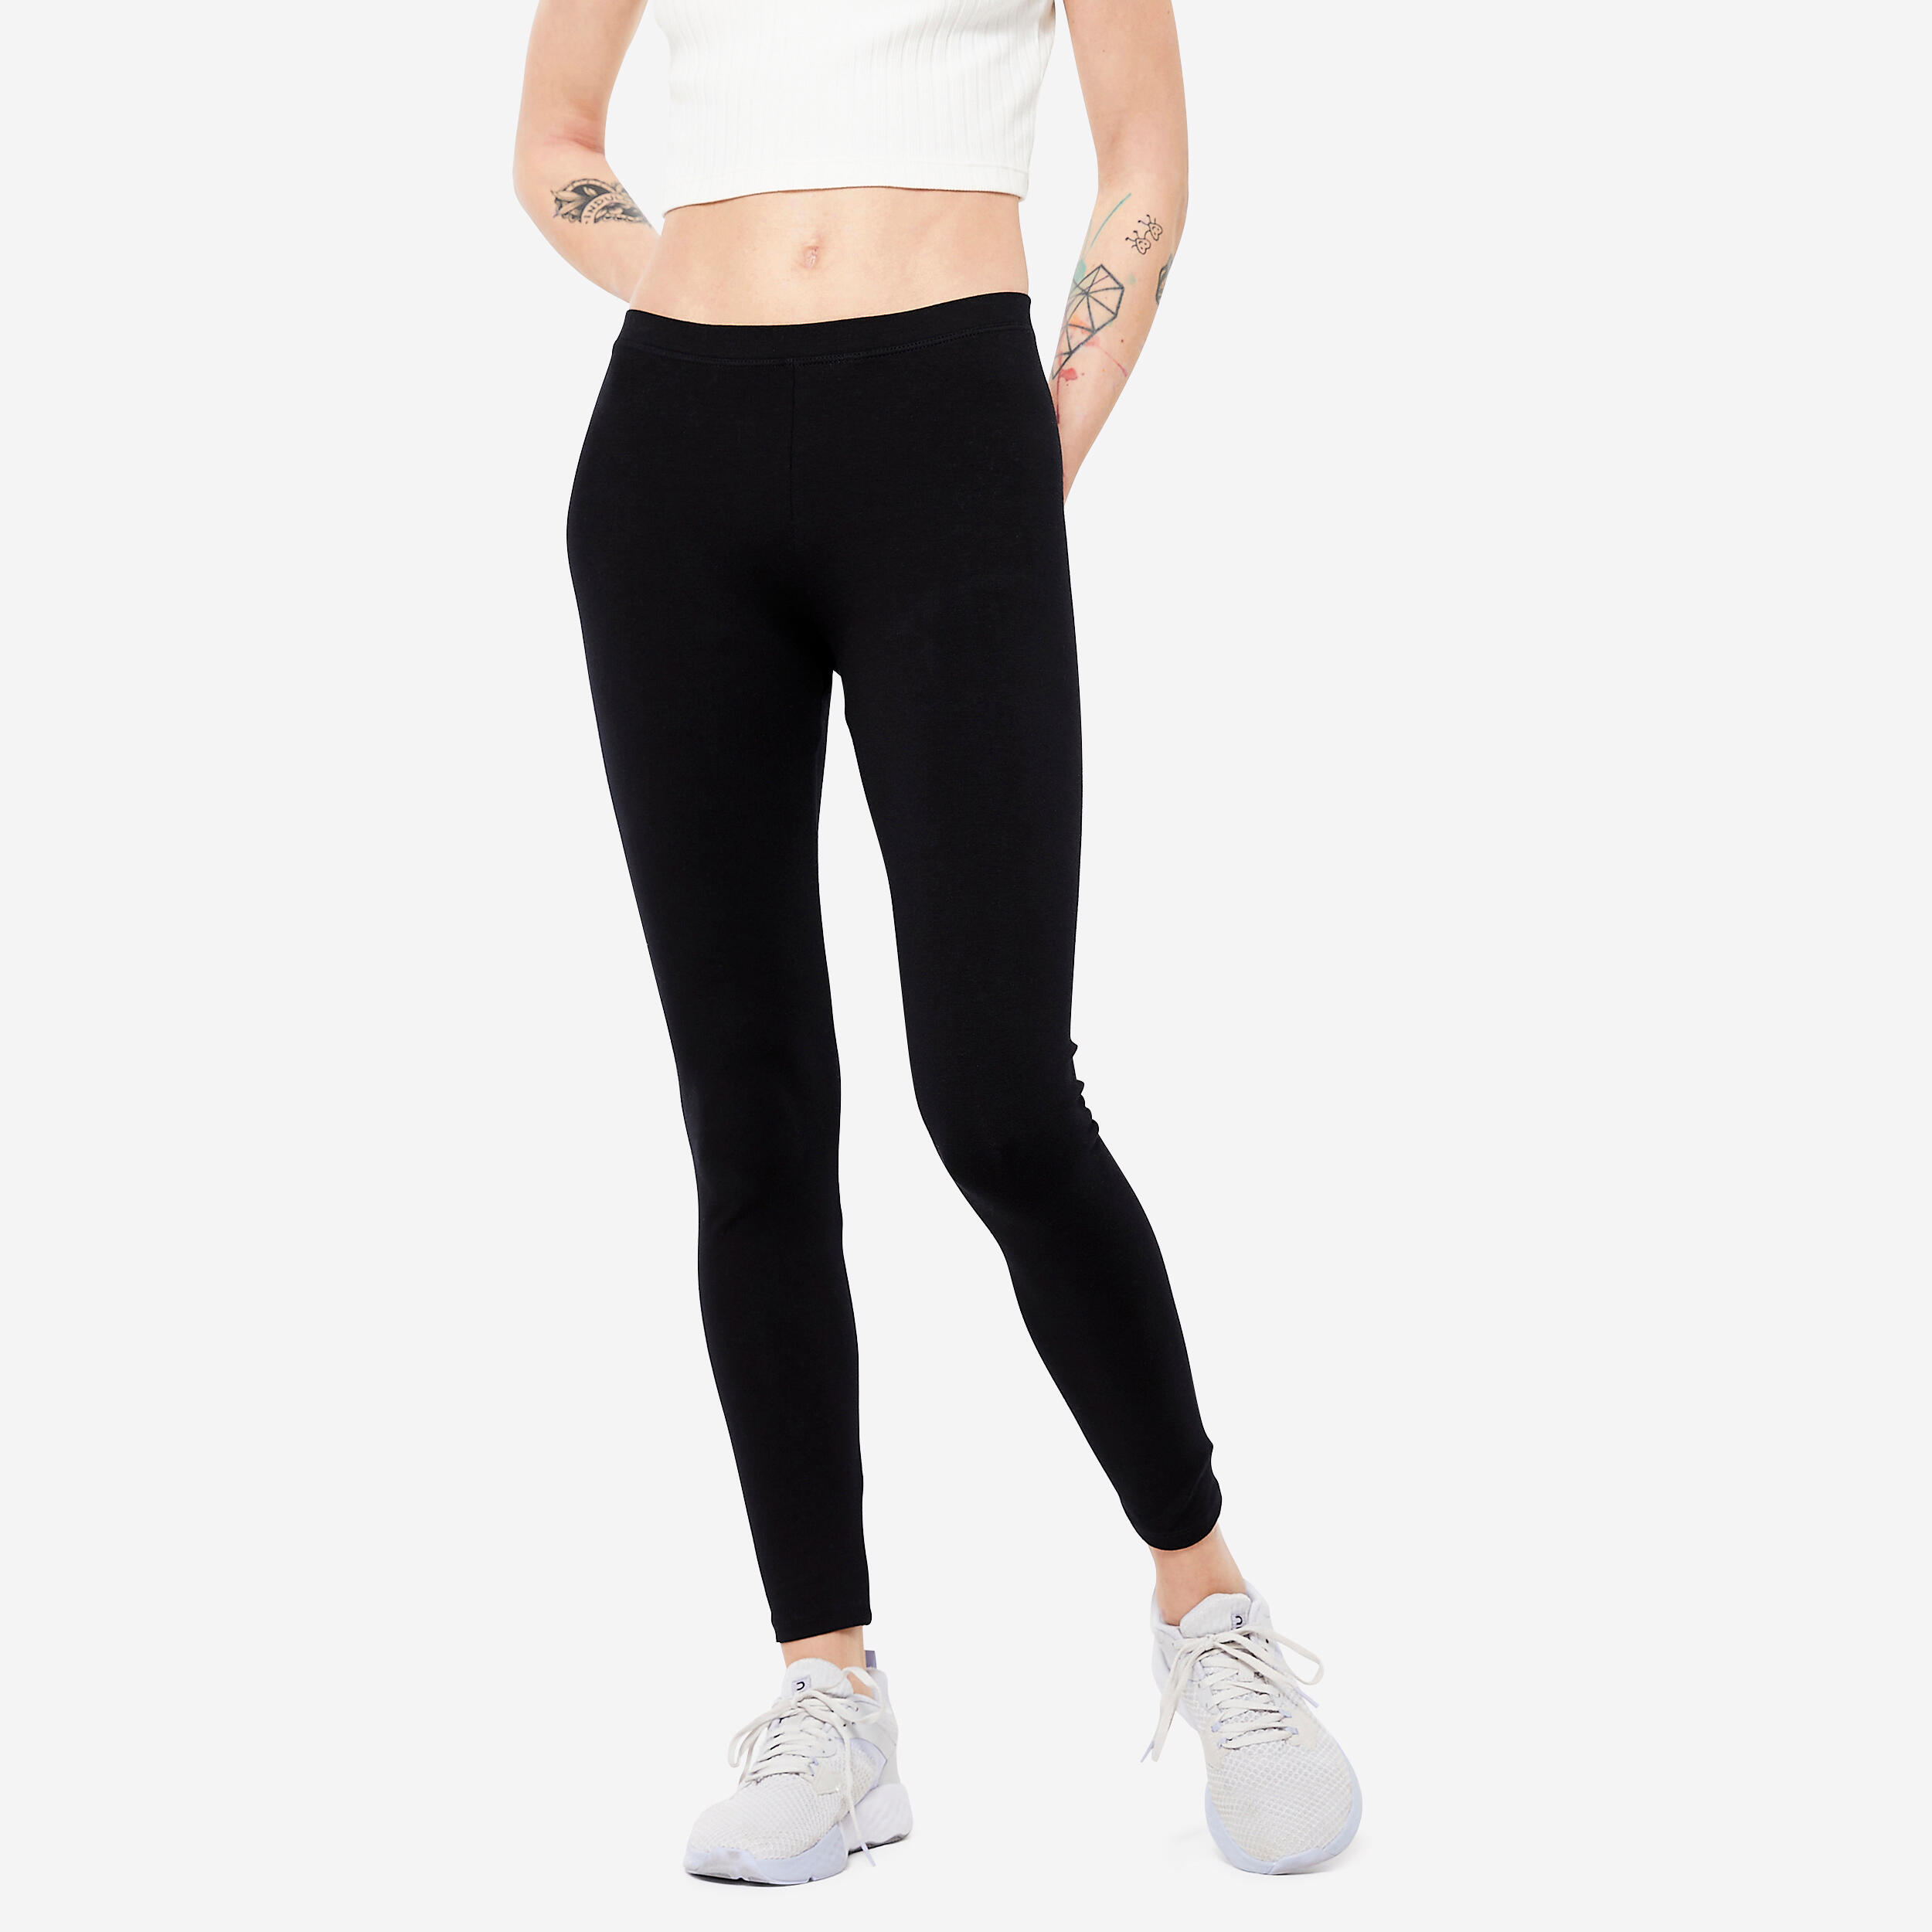 Buy WorldCare® Long Pants Legging Control Panties Fitness Bodyshape Shaper  Slim Super Stretch Capris Trouser Pant Women Color Black 1 Size S55920